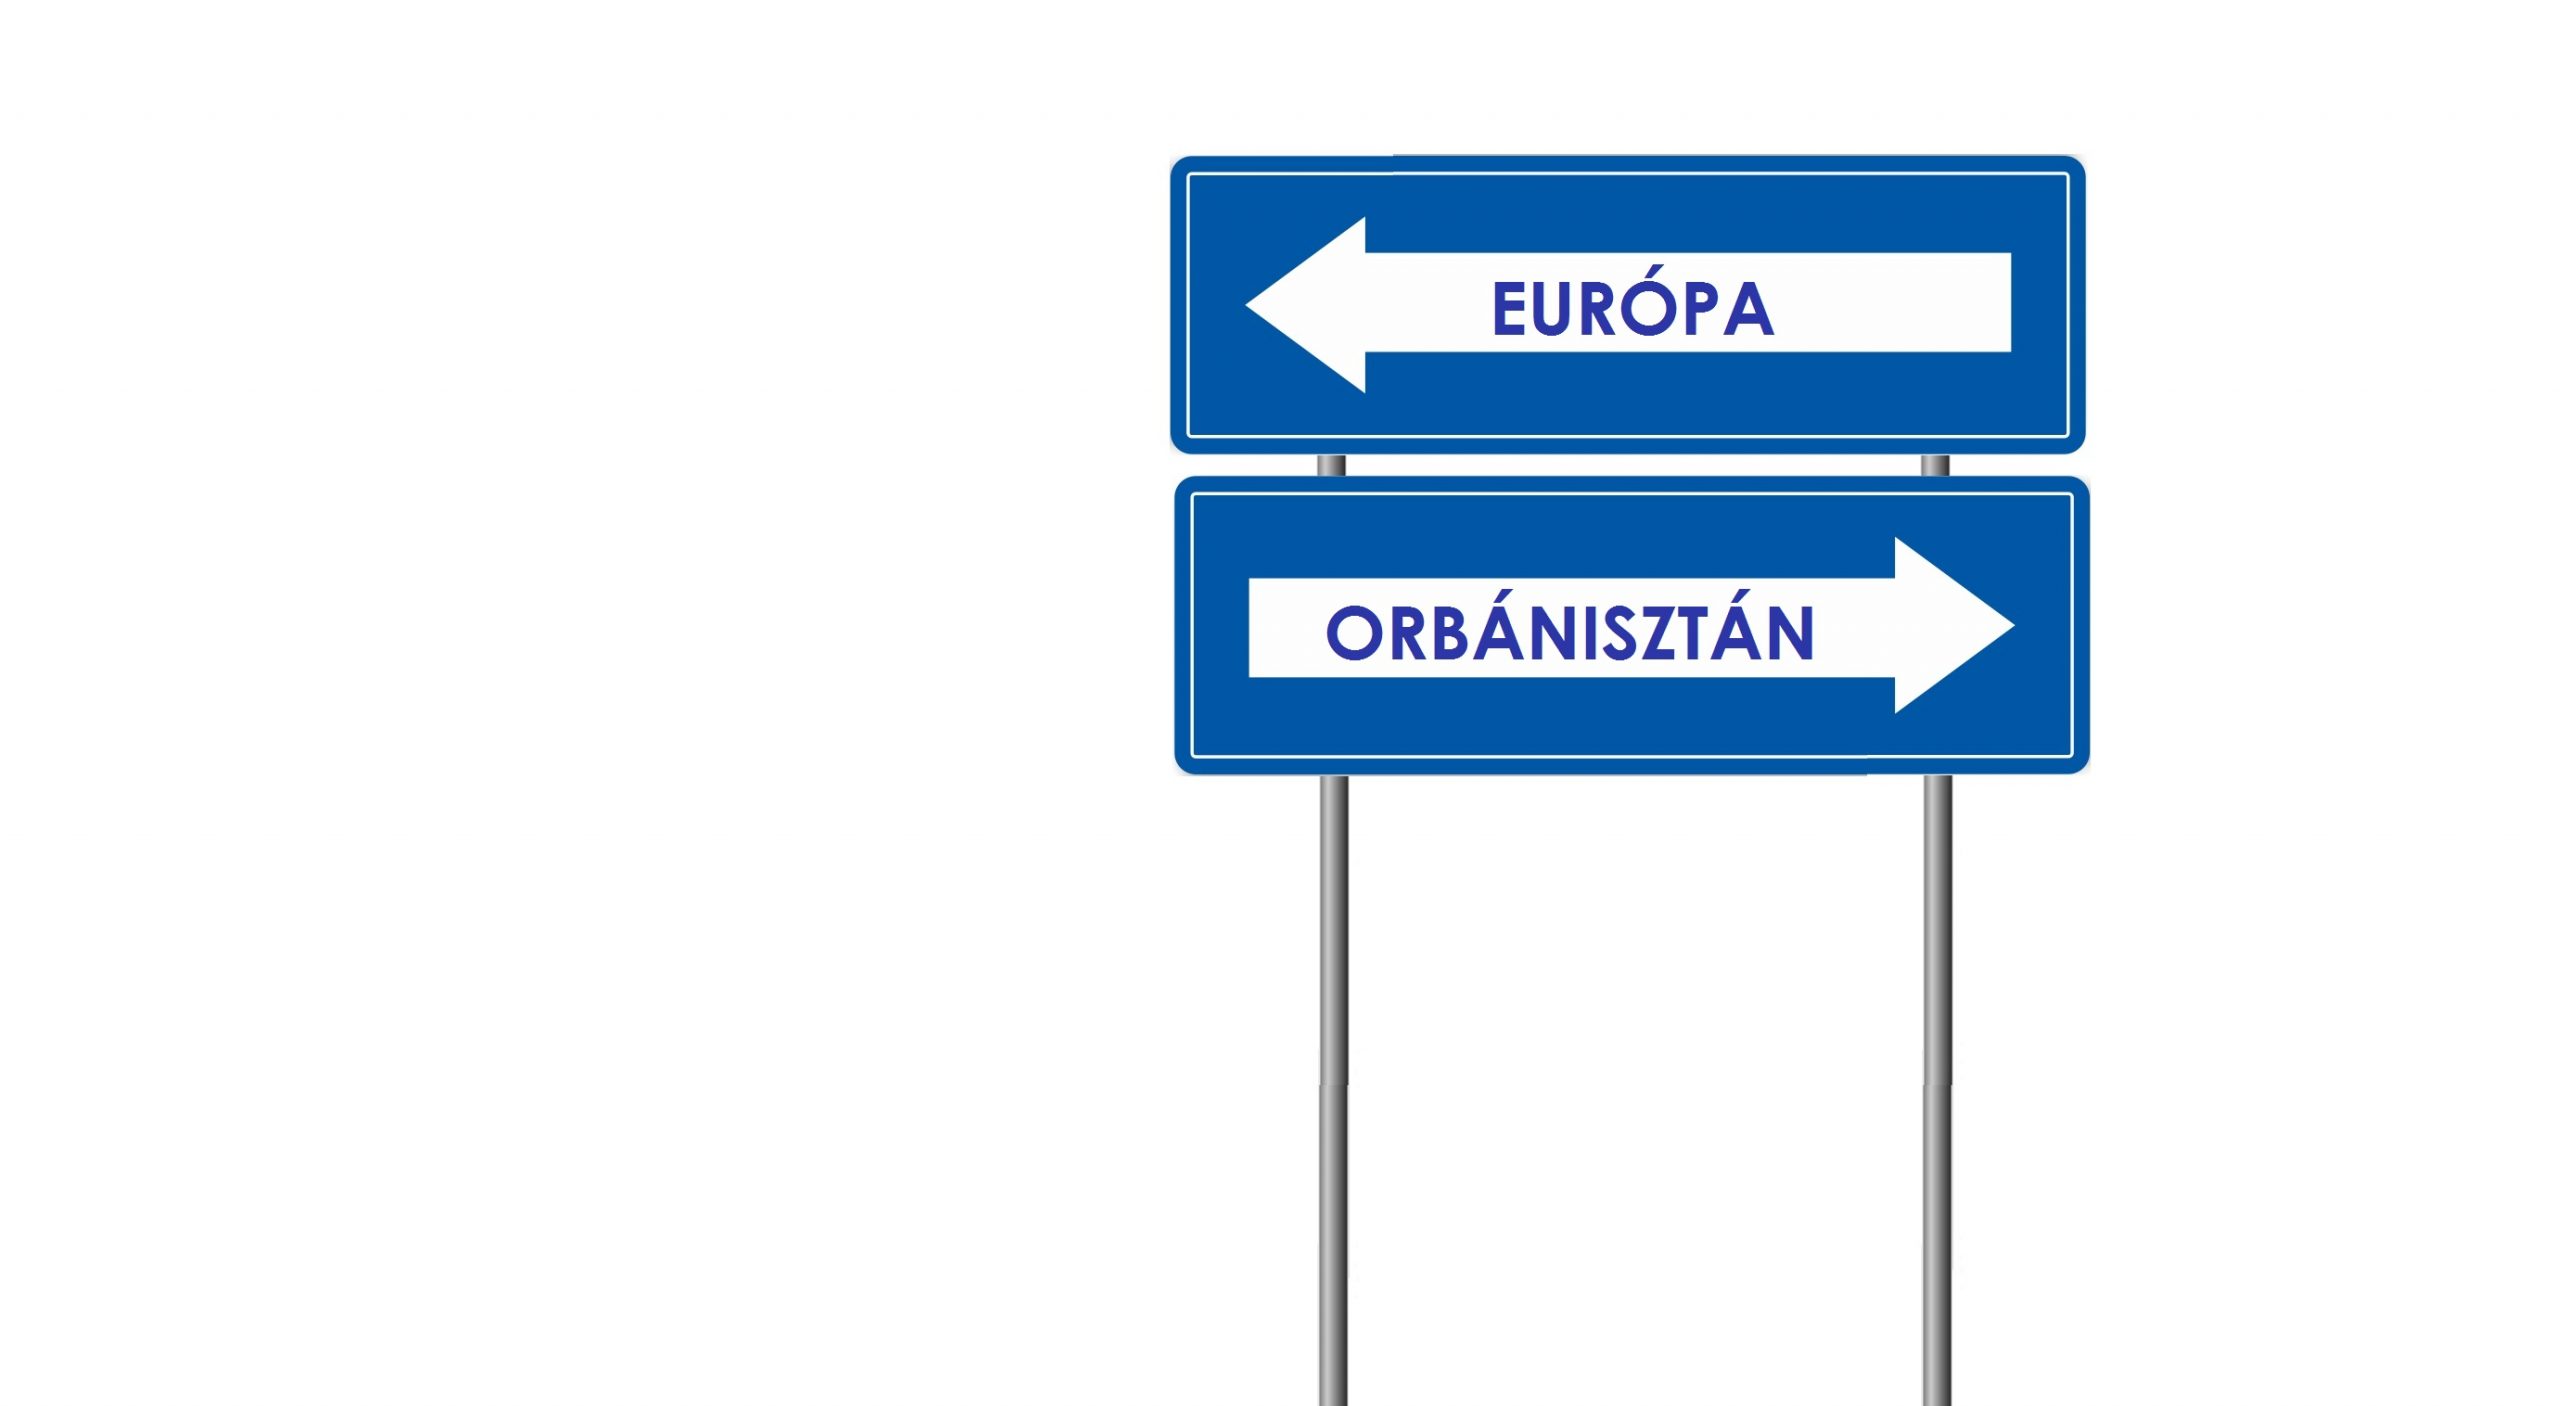 ’Tessék választani’: Orbánisztán vagy Európa?! (Népszava-publicisztika)